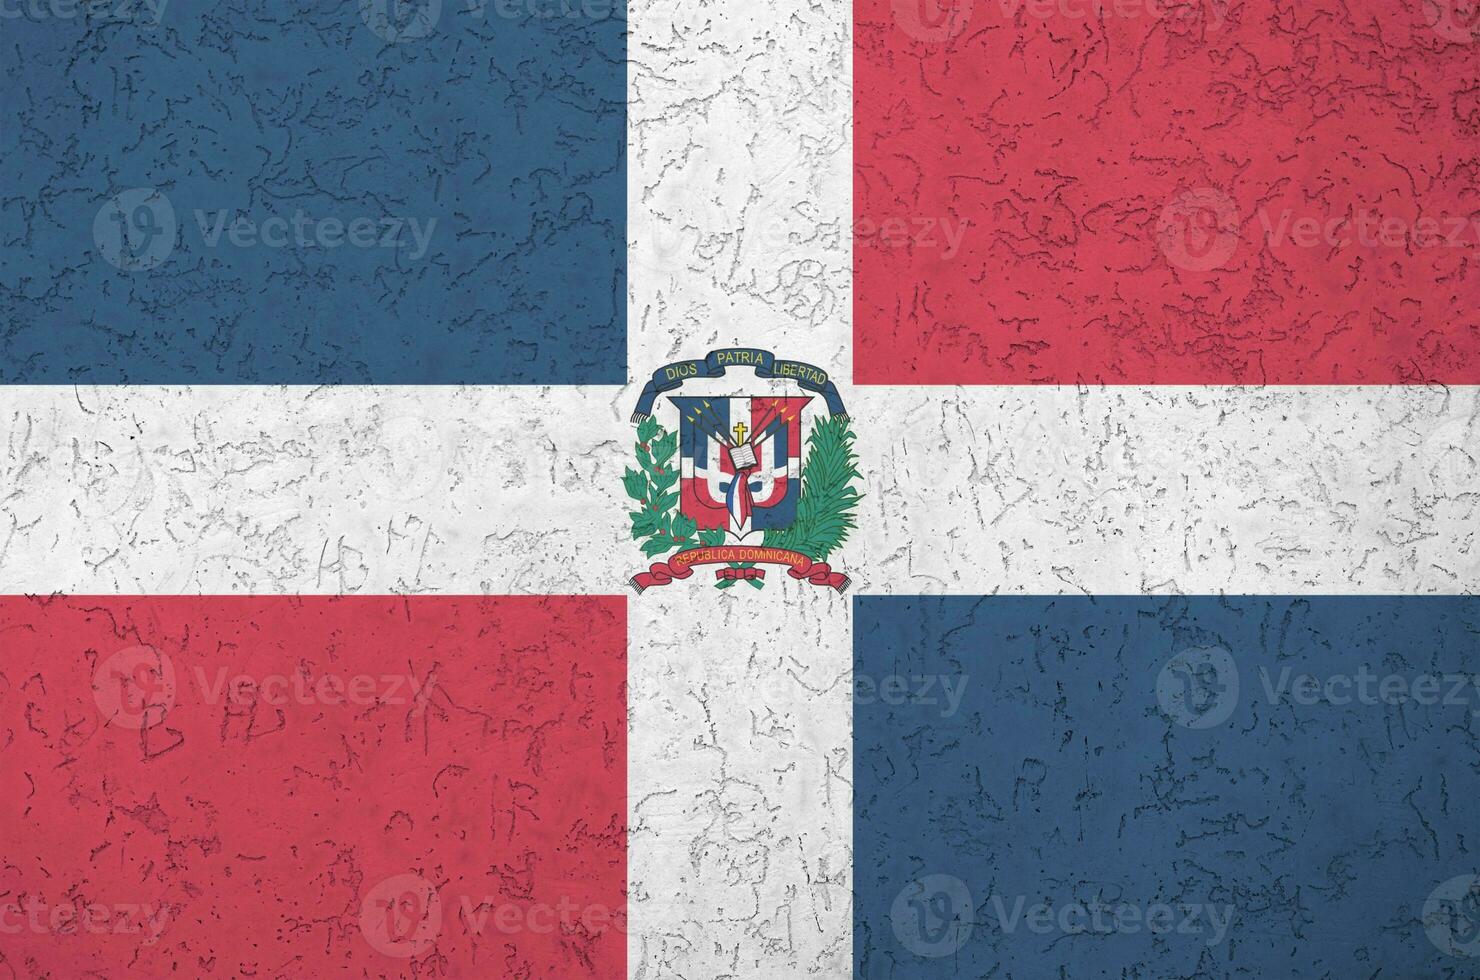 Dominikanska republik flagga avbildad i ljus måla färger på gammal lättnad putsning vägg. texturerad baner på grov bakgrund foto